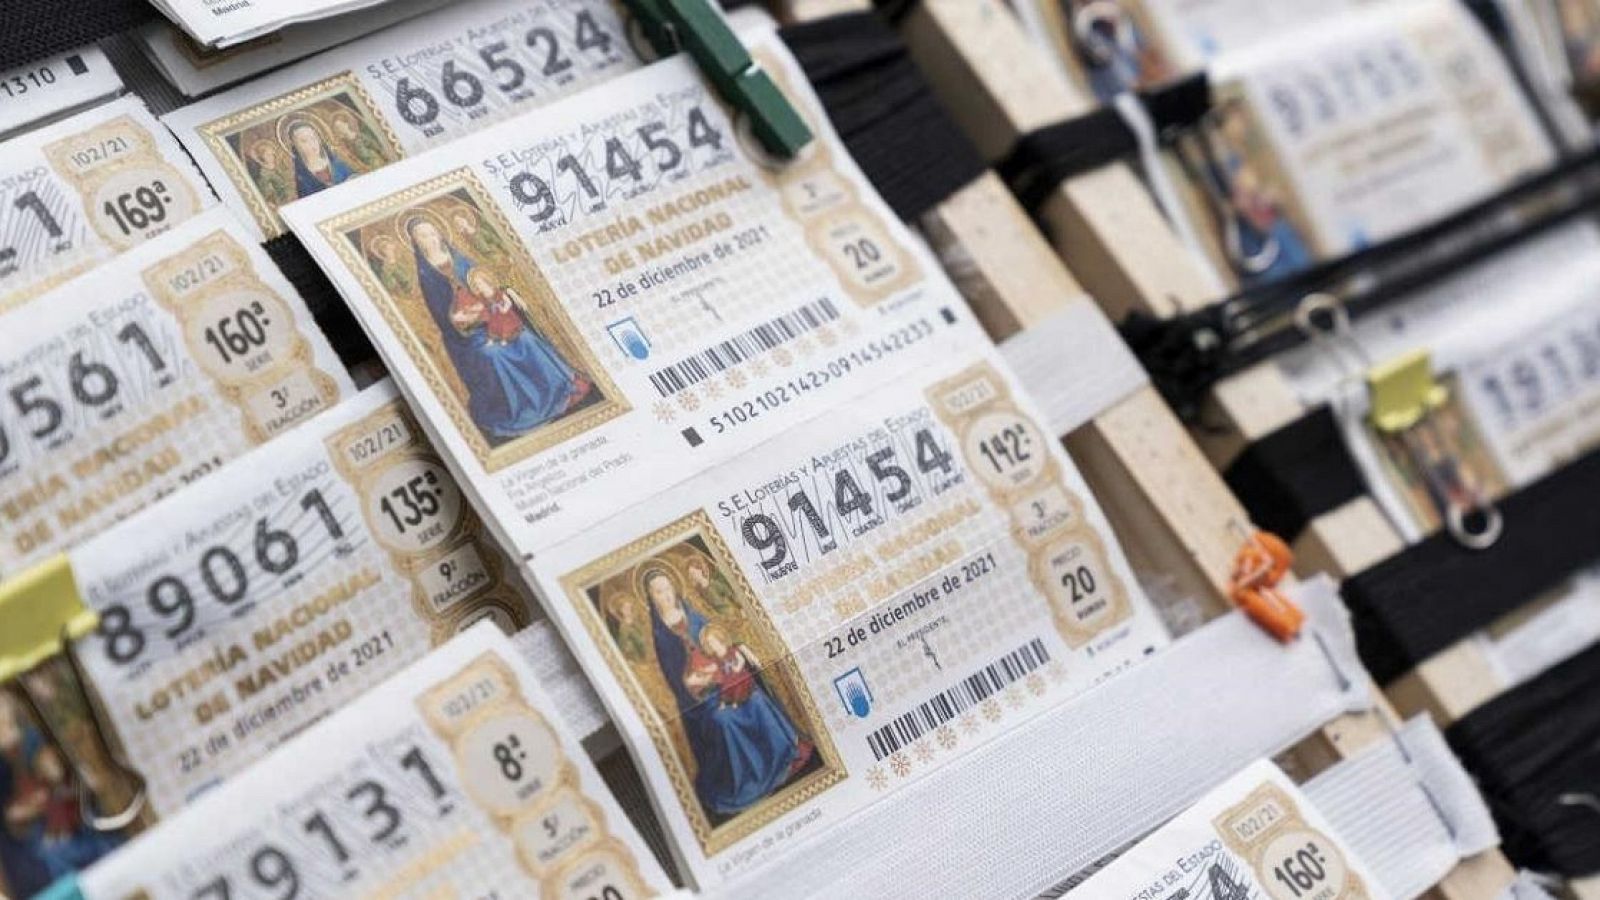  Loteries treu 20,6 milions de dècims a la venda a Catalunya